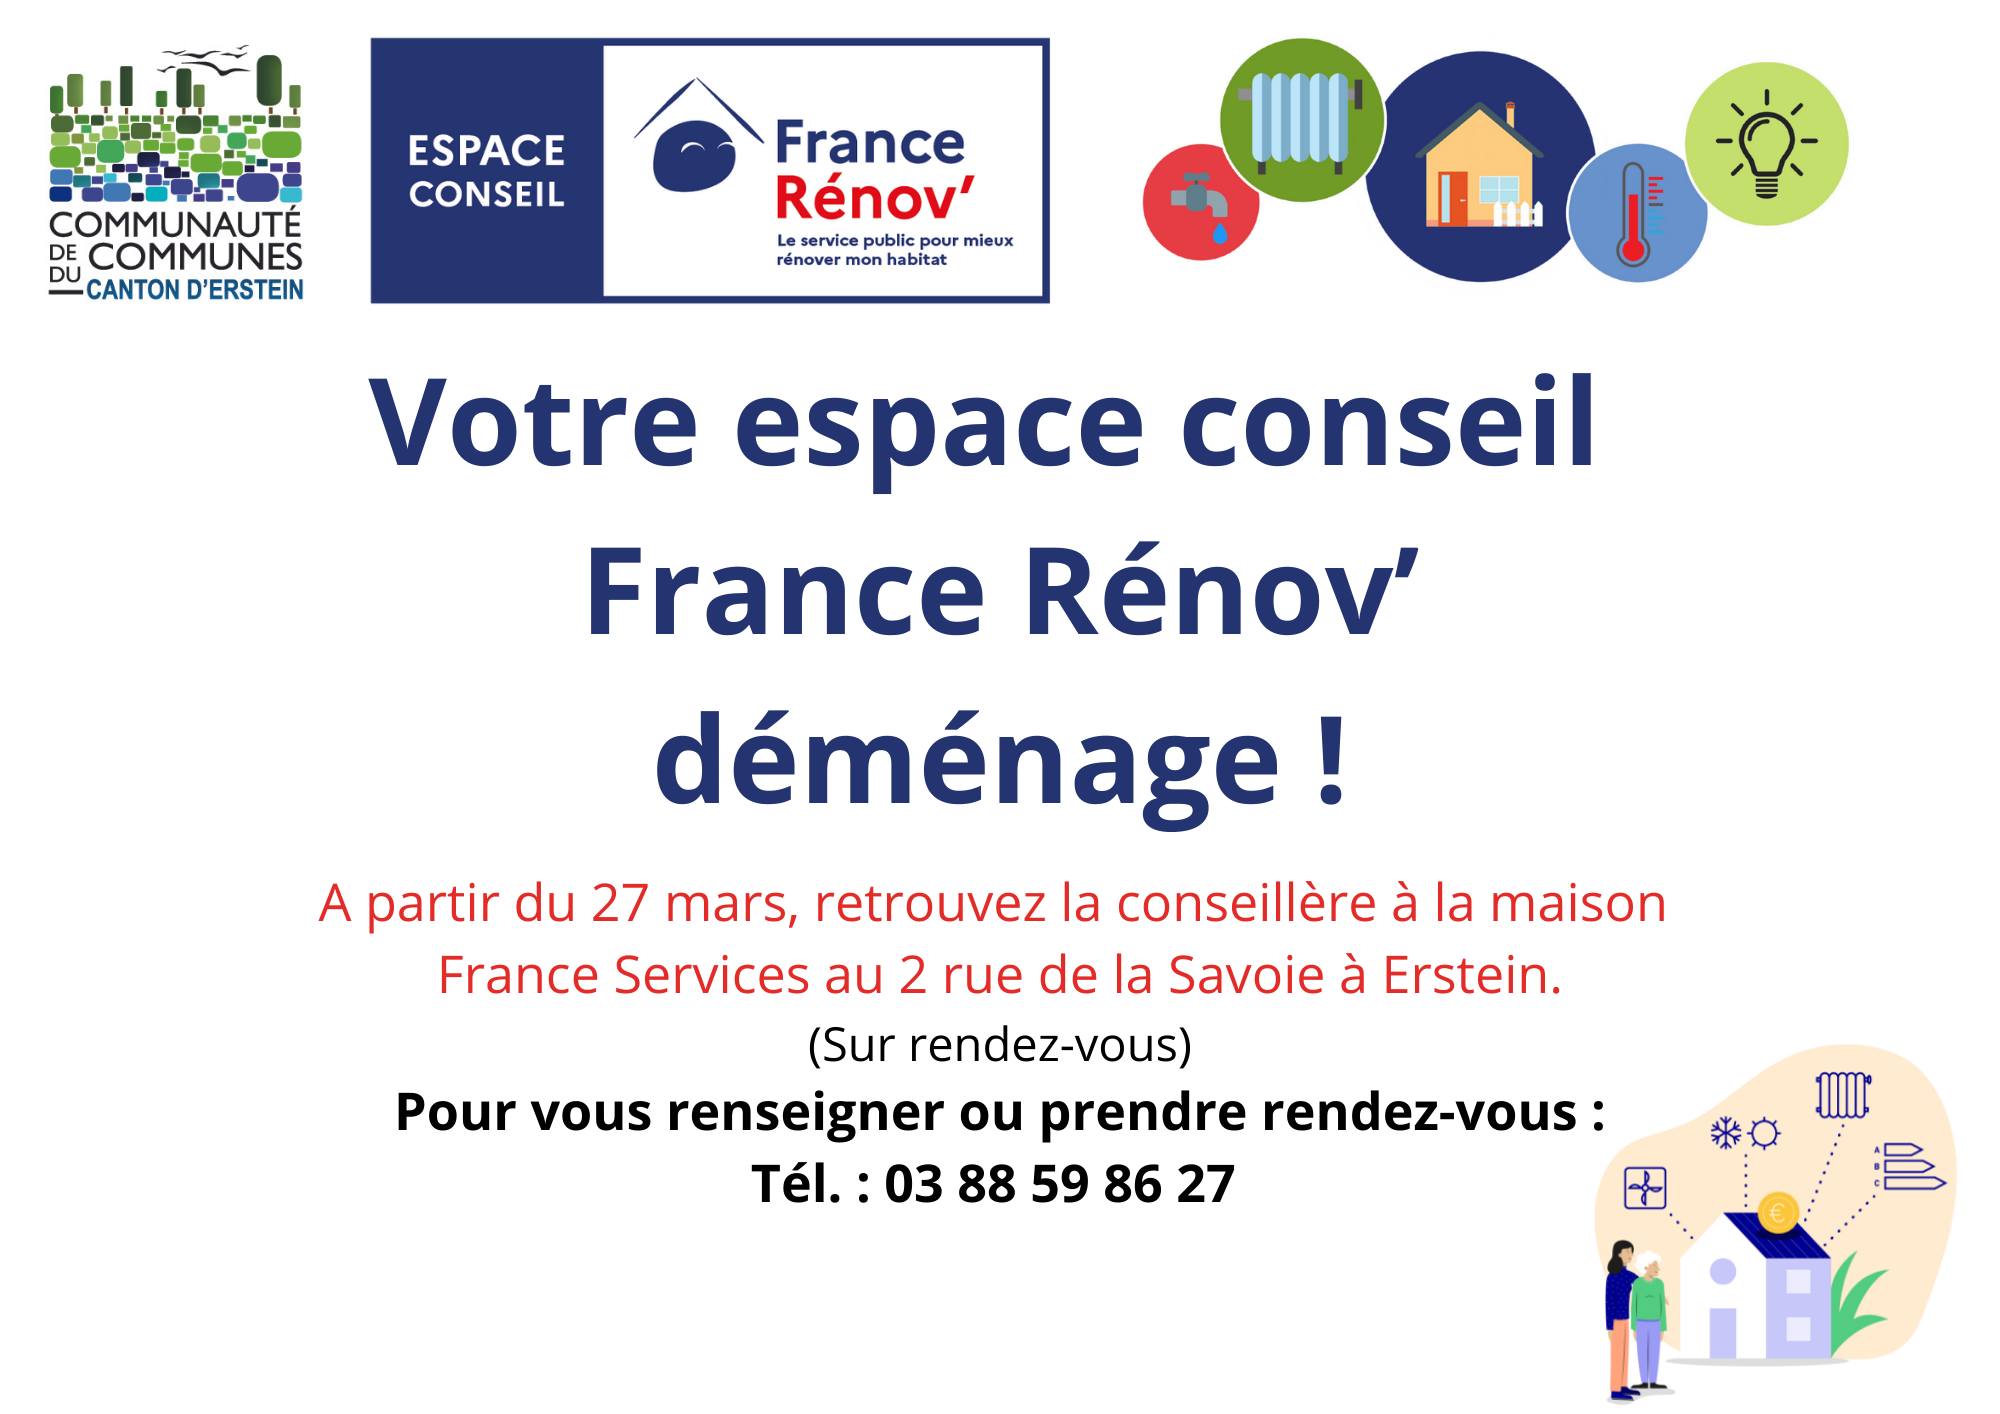 Déménagement de l'espace conseil France Rénov'